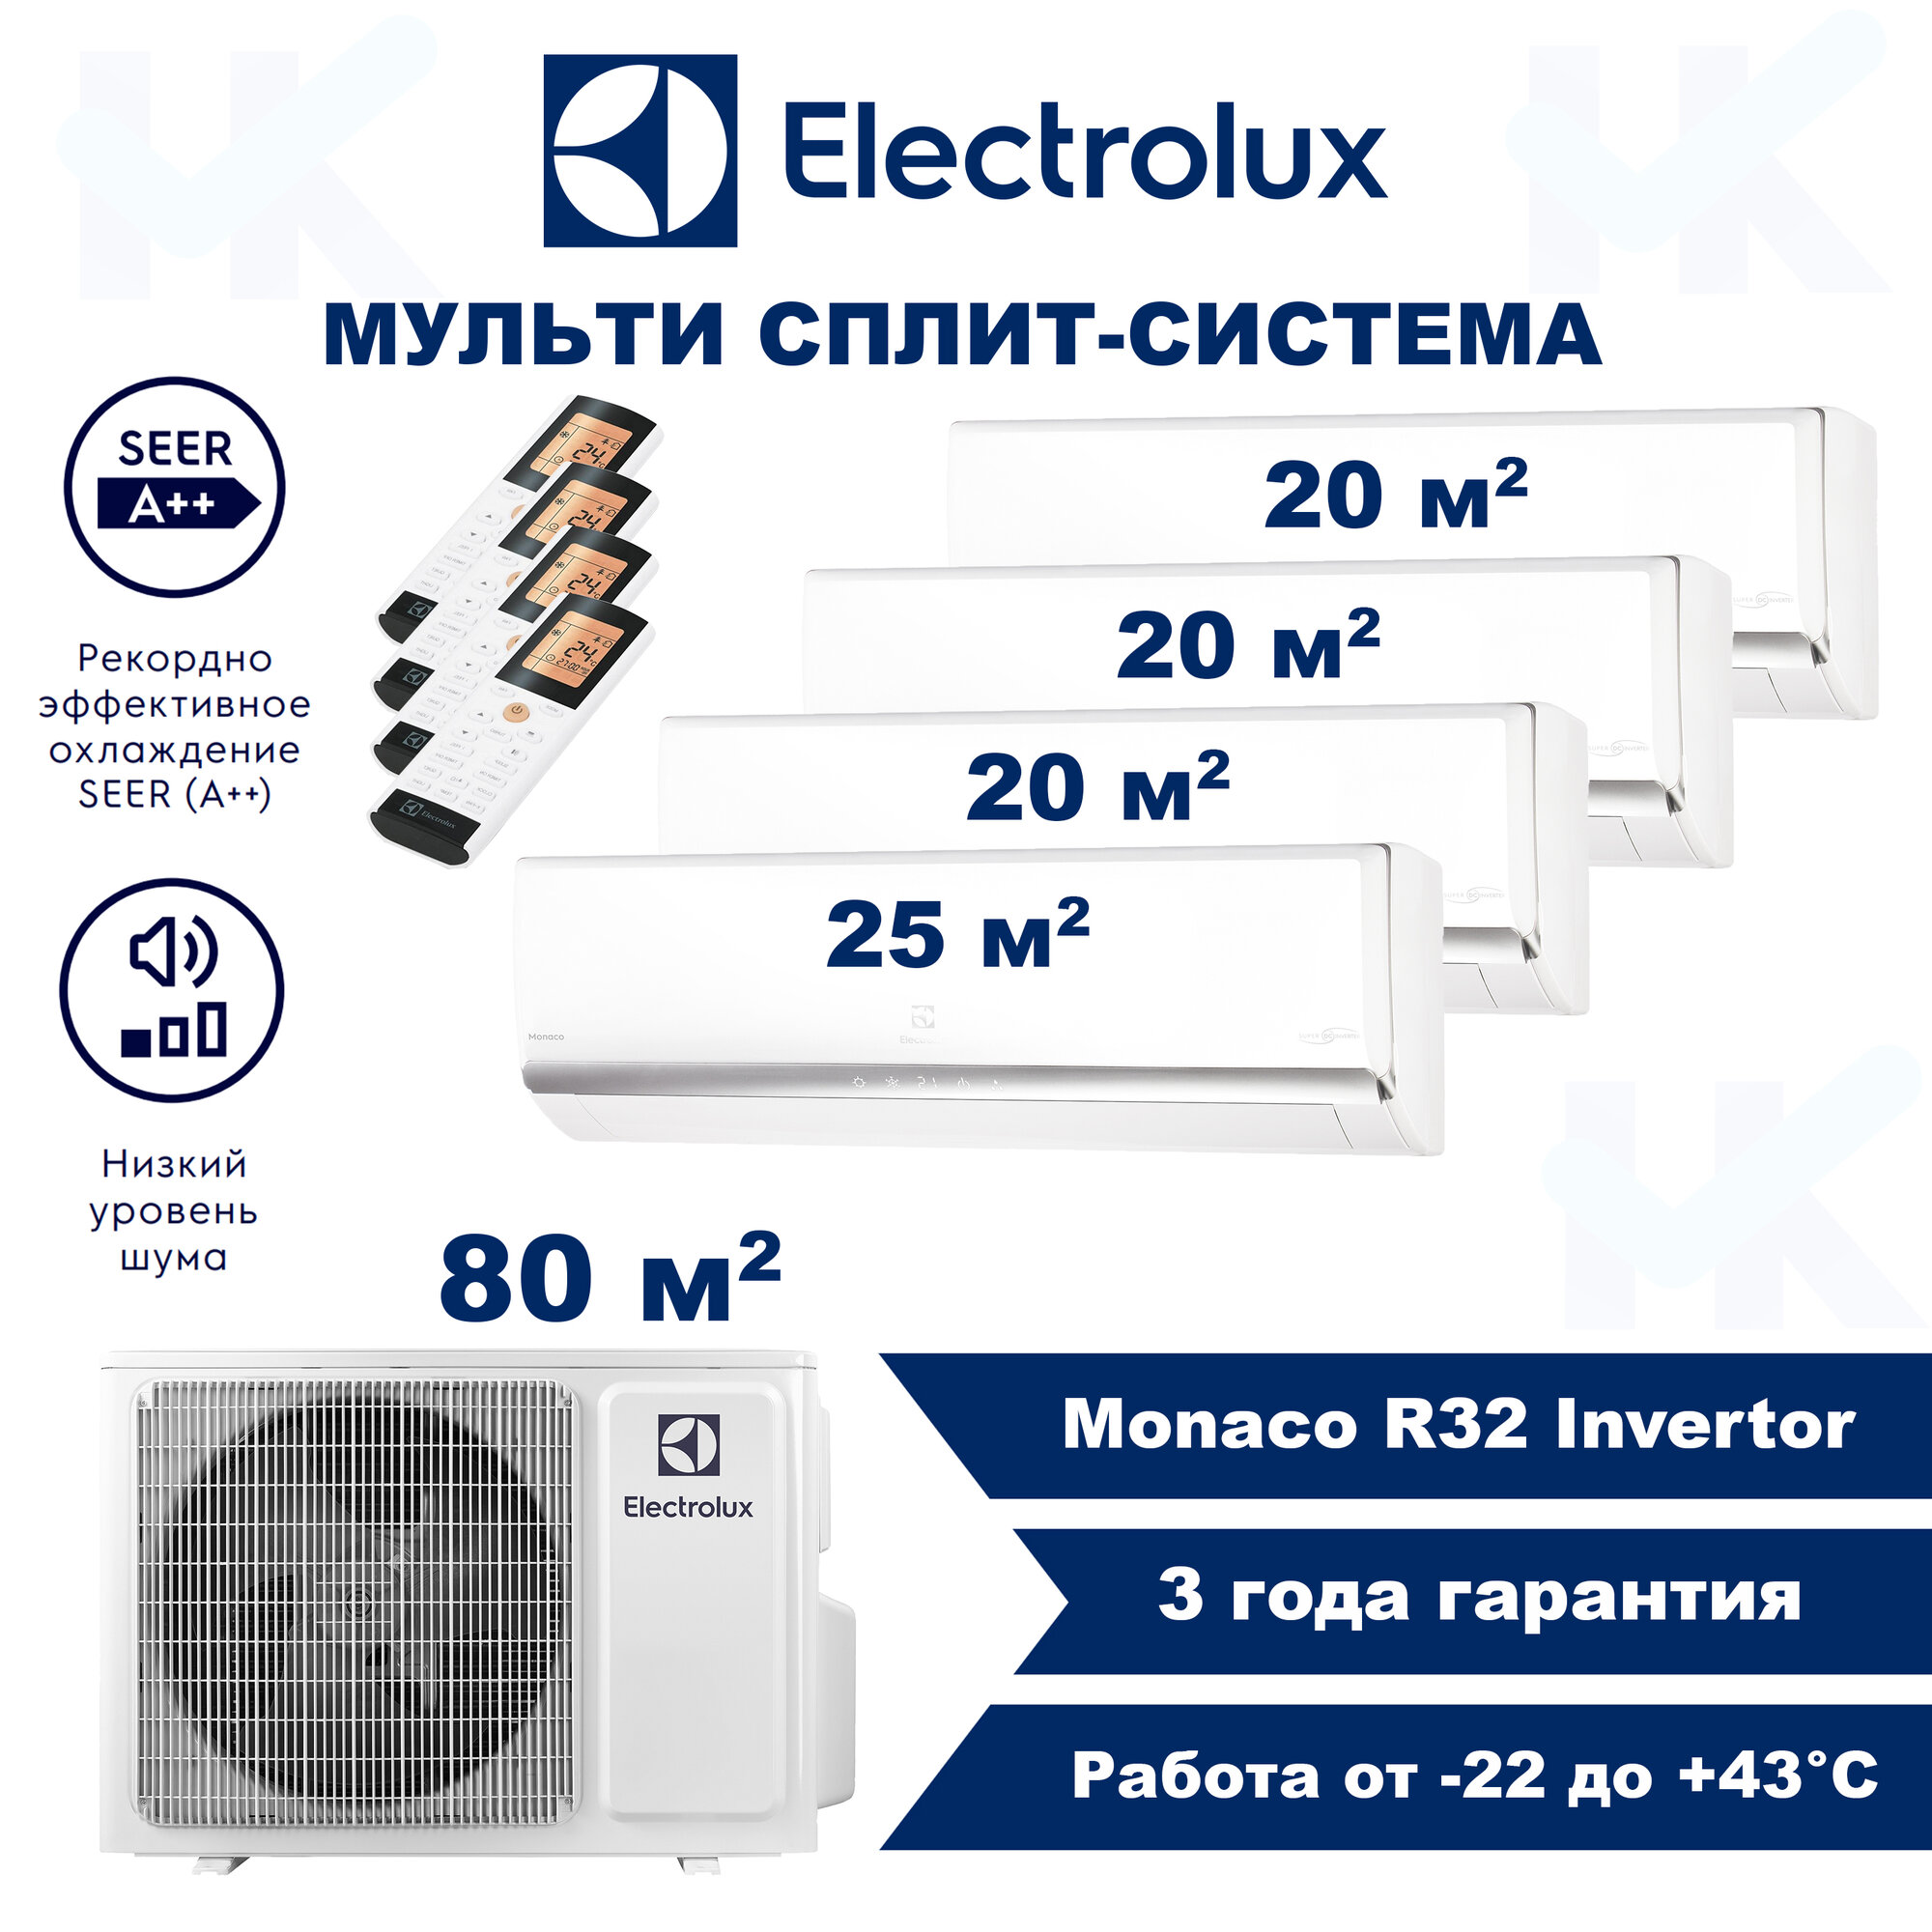 Инверторная мульти сплит-система ELECTROLUX серии Monaco на 4 комнаты (20 м2 + 20 м2 + 20 м2 + 25 м2) с наружным блоком 80 м2 Попеременная работа